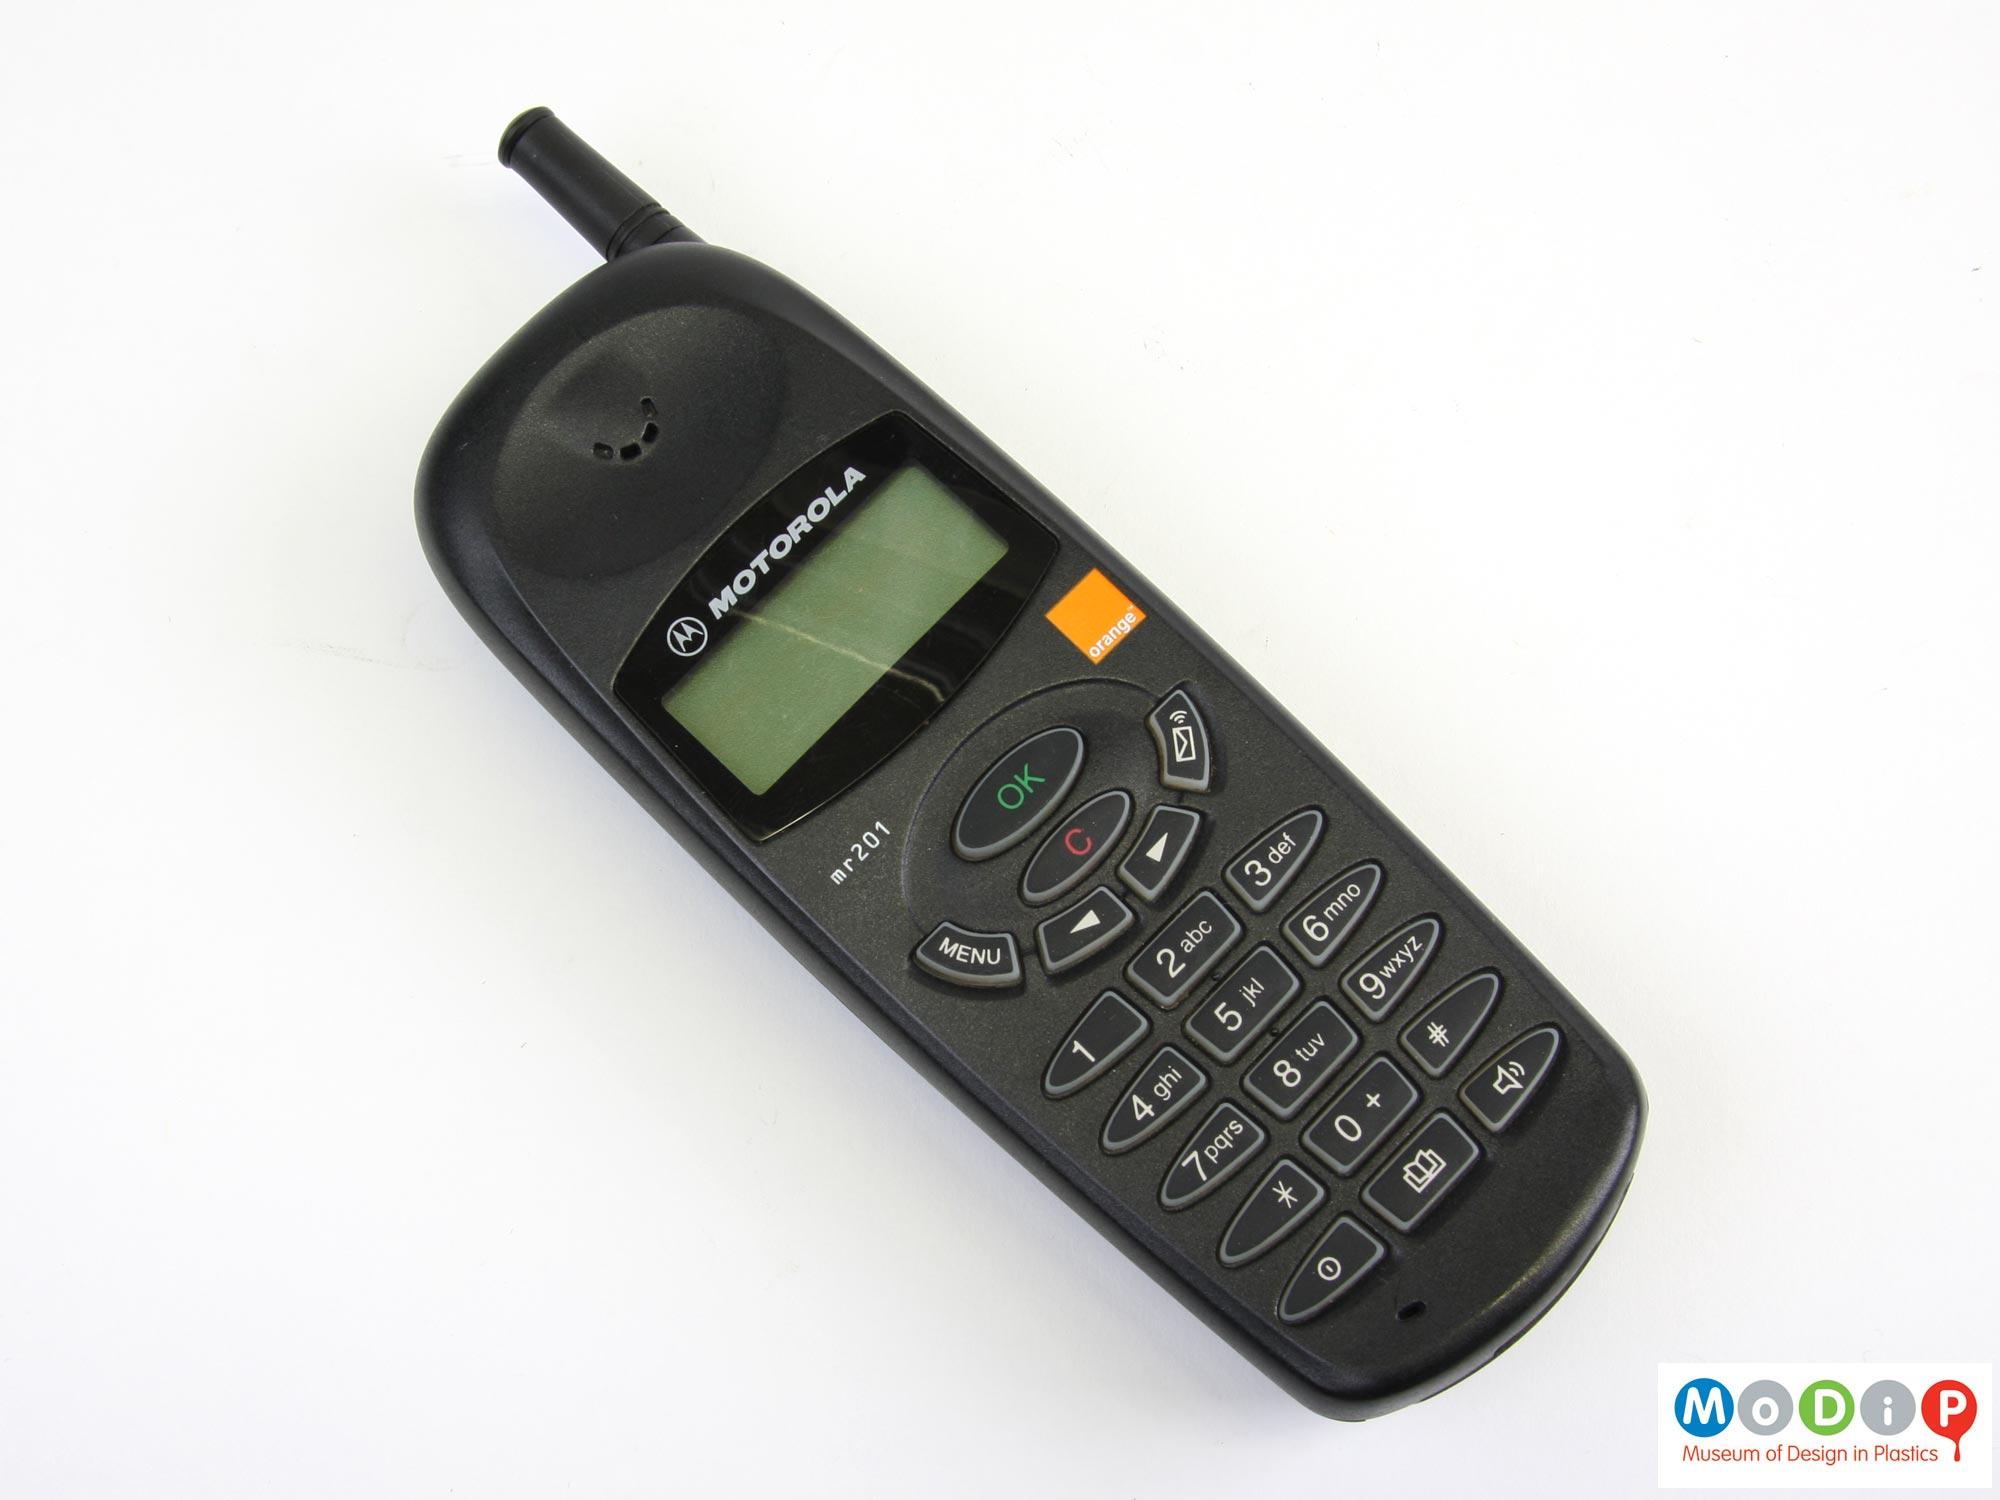 Motorola Mr201 mobile phone Museum of Design in Plastics